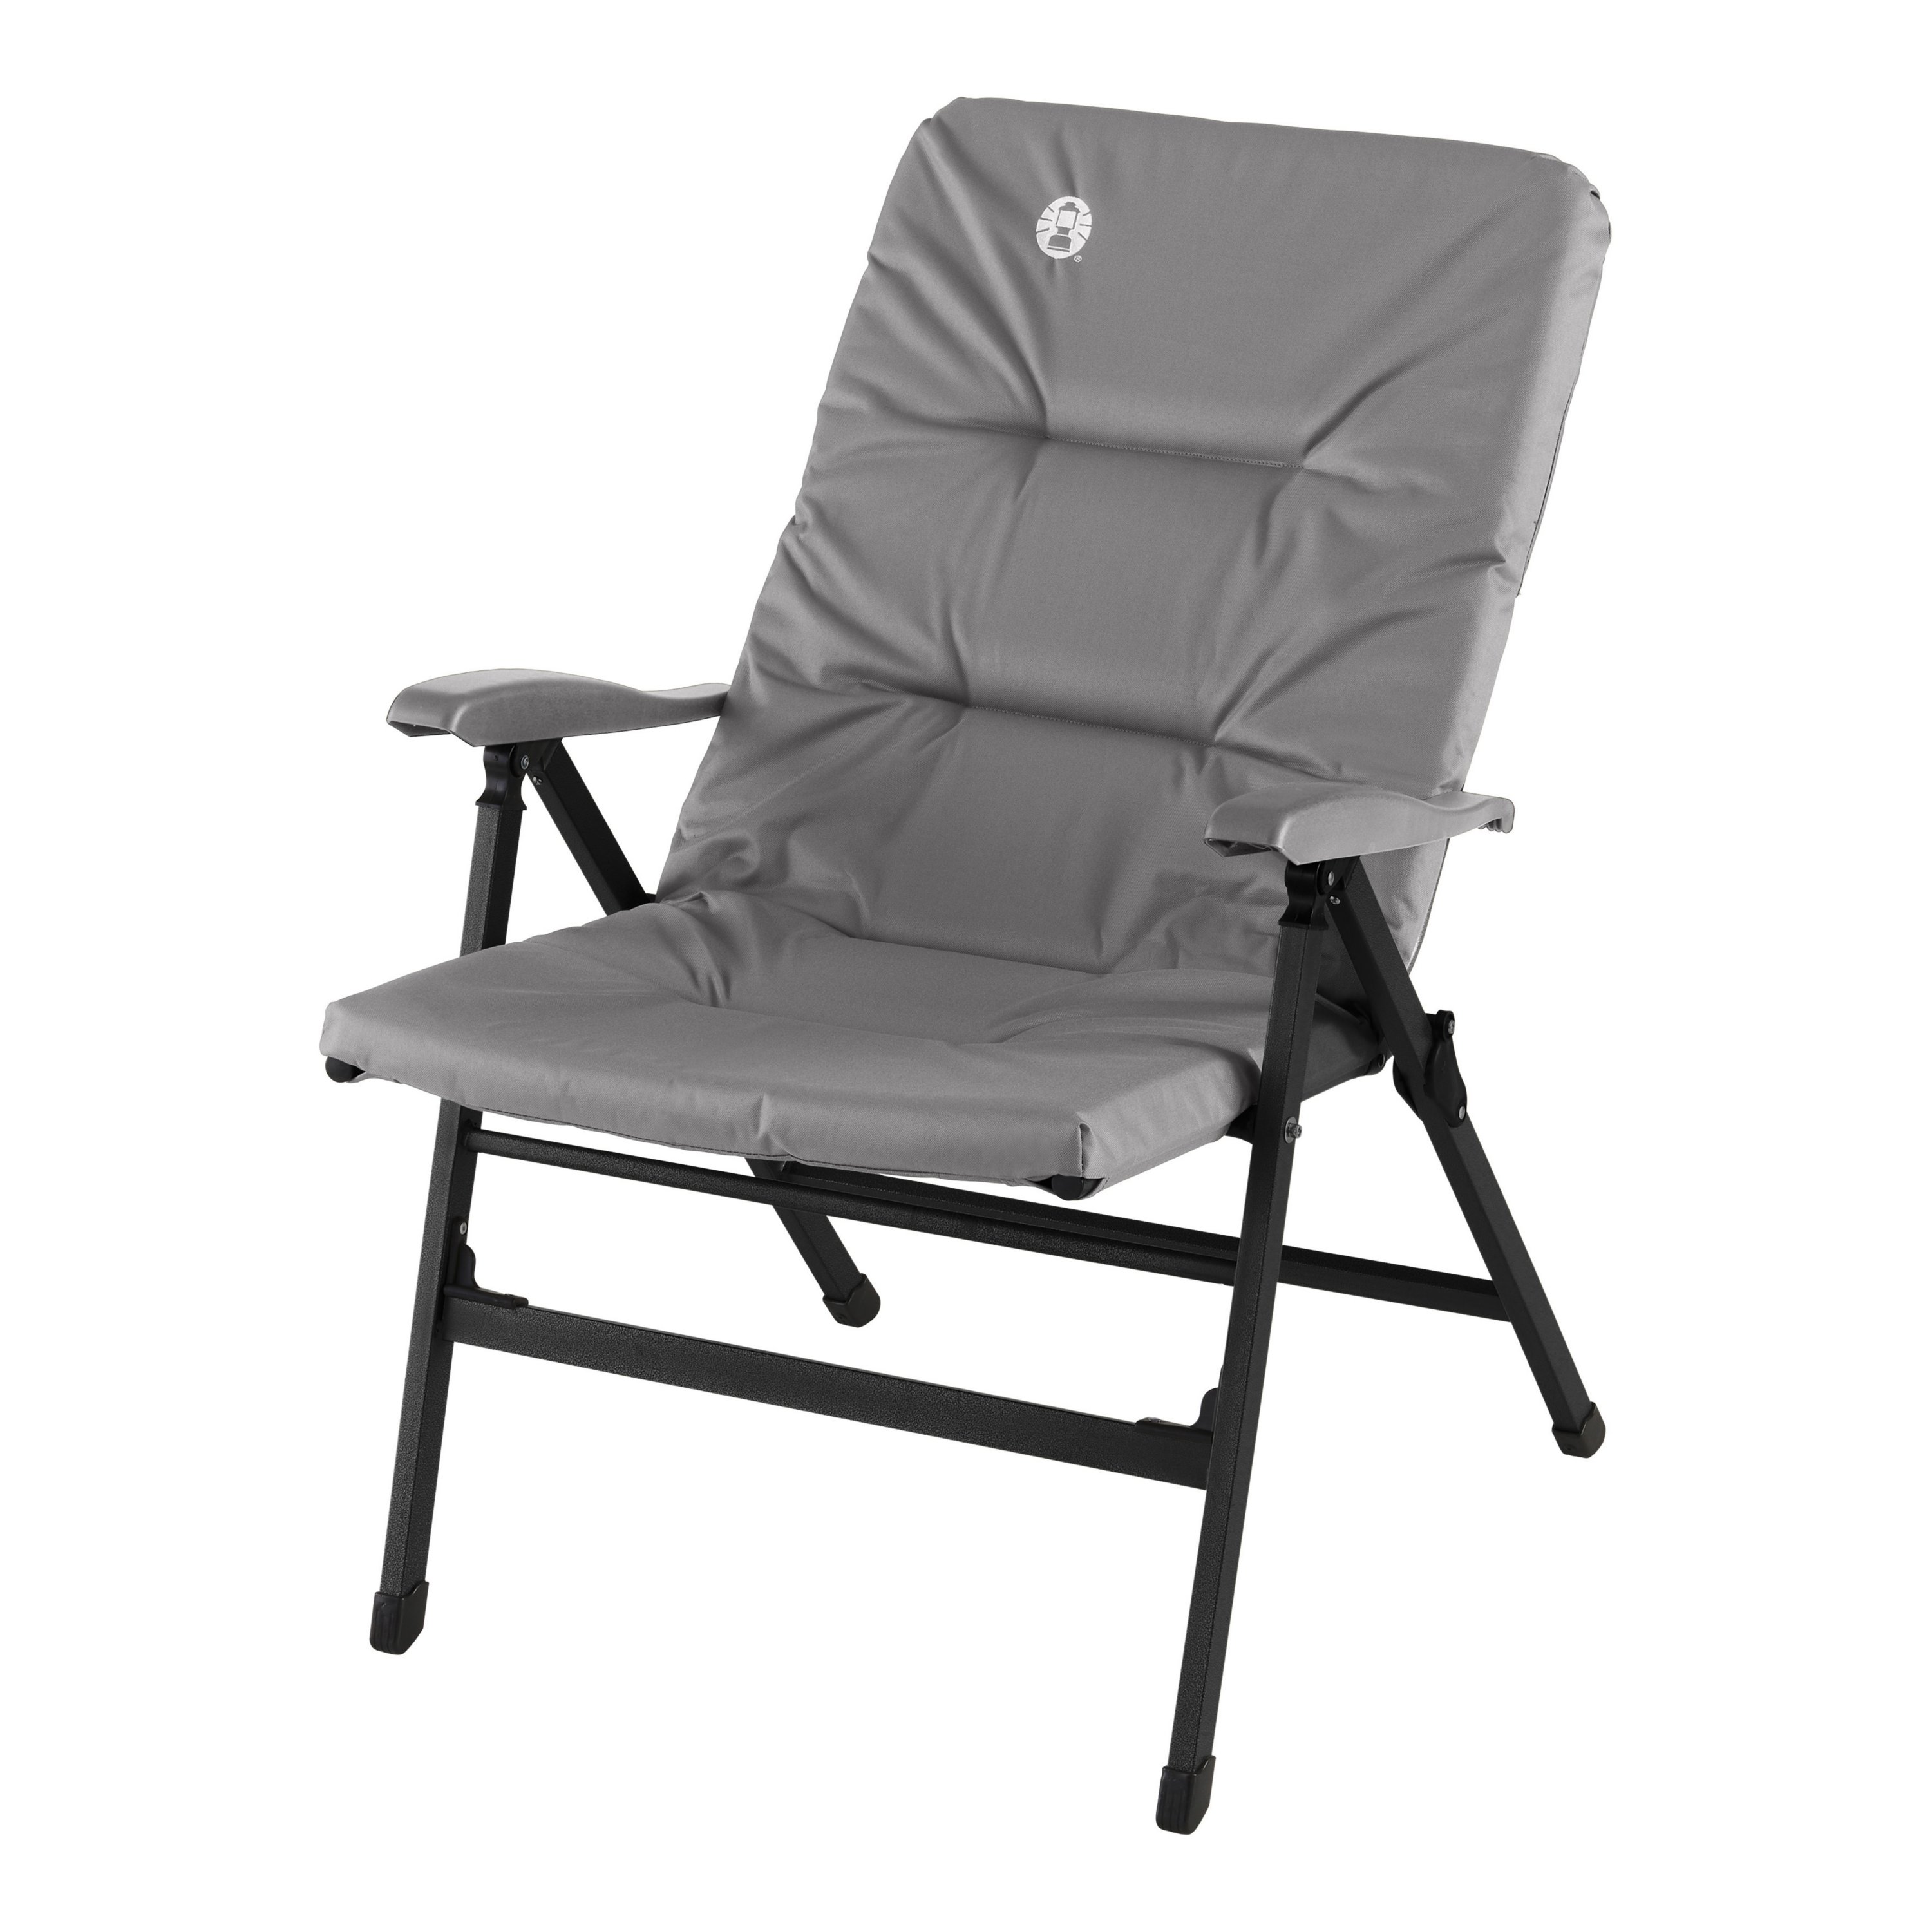 8 Recliner Chair kampeerstoel | Coleman Benelux